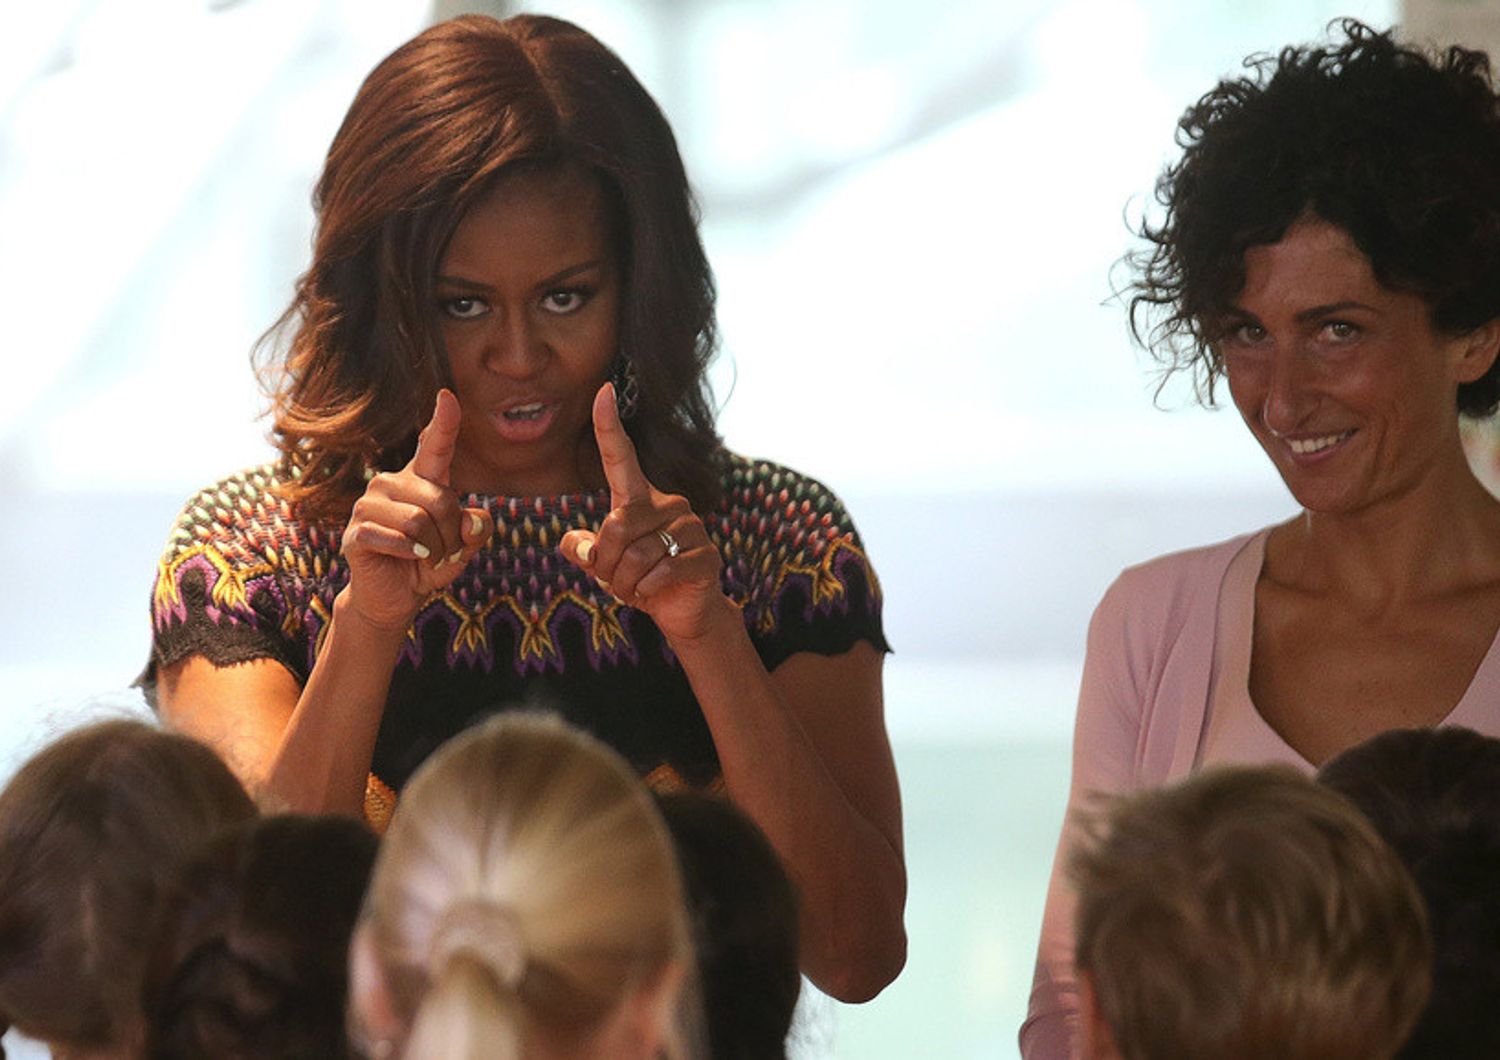 Michelle Obama a Expo con Agnese Renzi. Sasha e Malia in giro per i padiglioni - FOTO e VIDEO